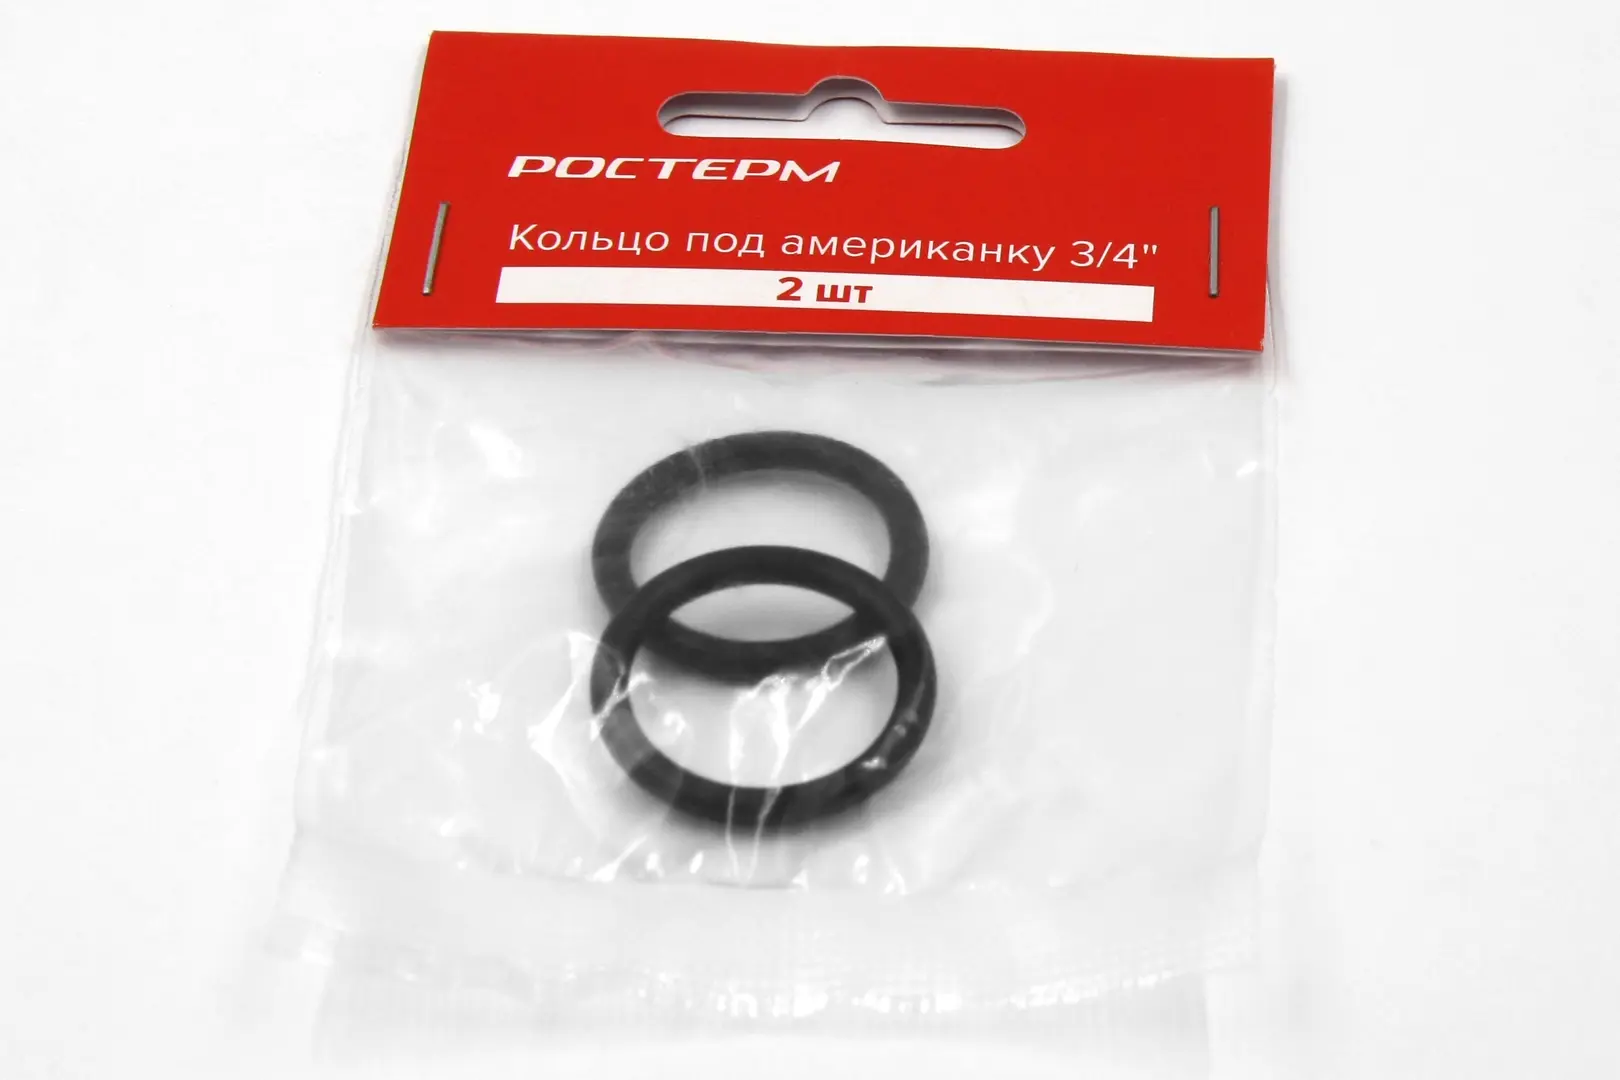 Кольцо под американку Ростерм 20 мм 2 штуки цвет чёрный кольцо для бретелей металлическое 10 мм 20 шт цвет чёрный